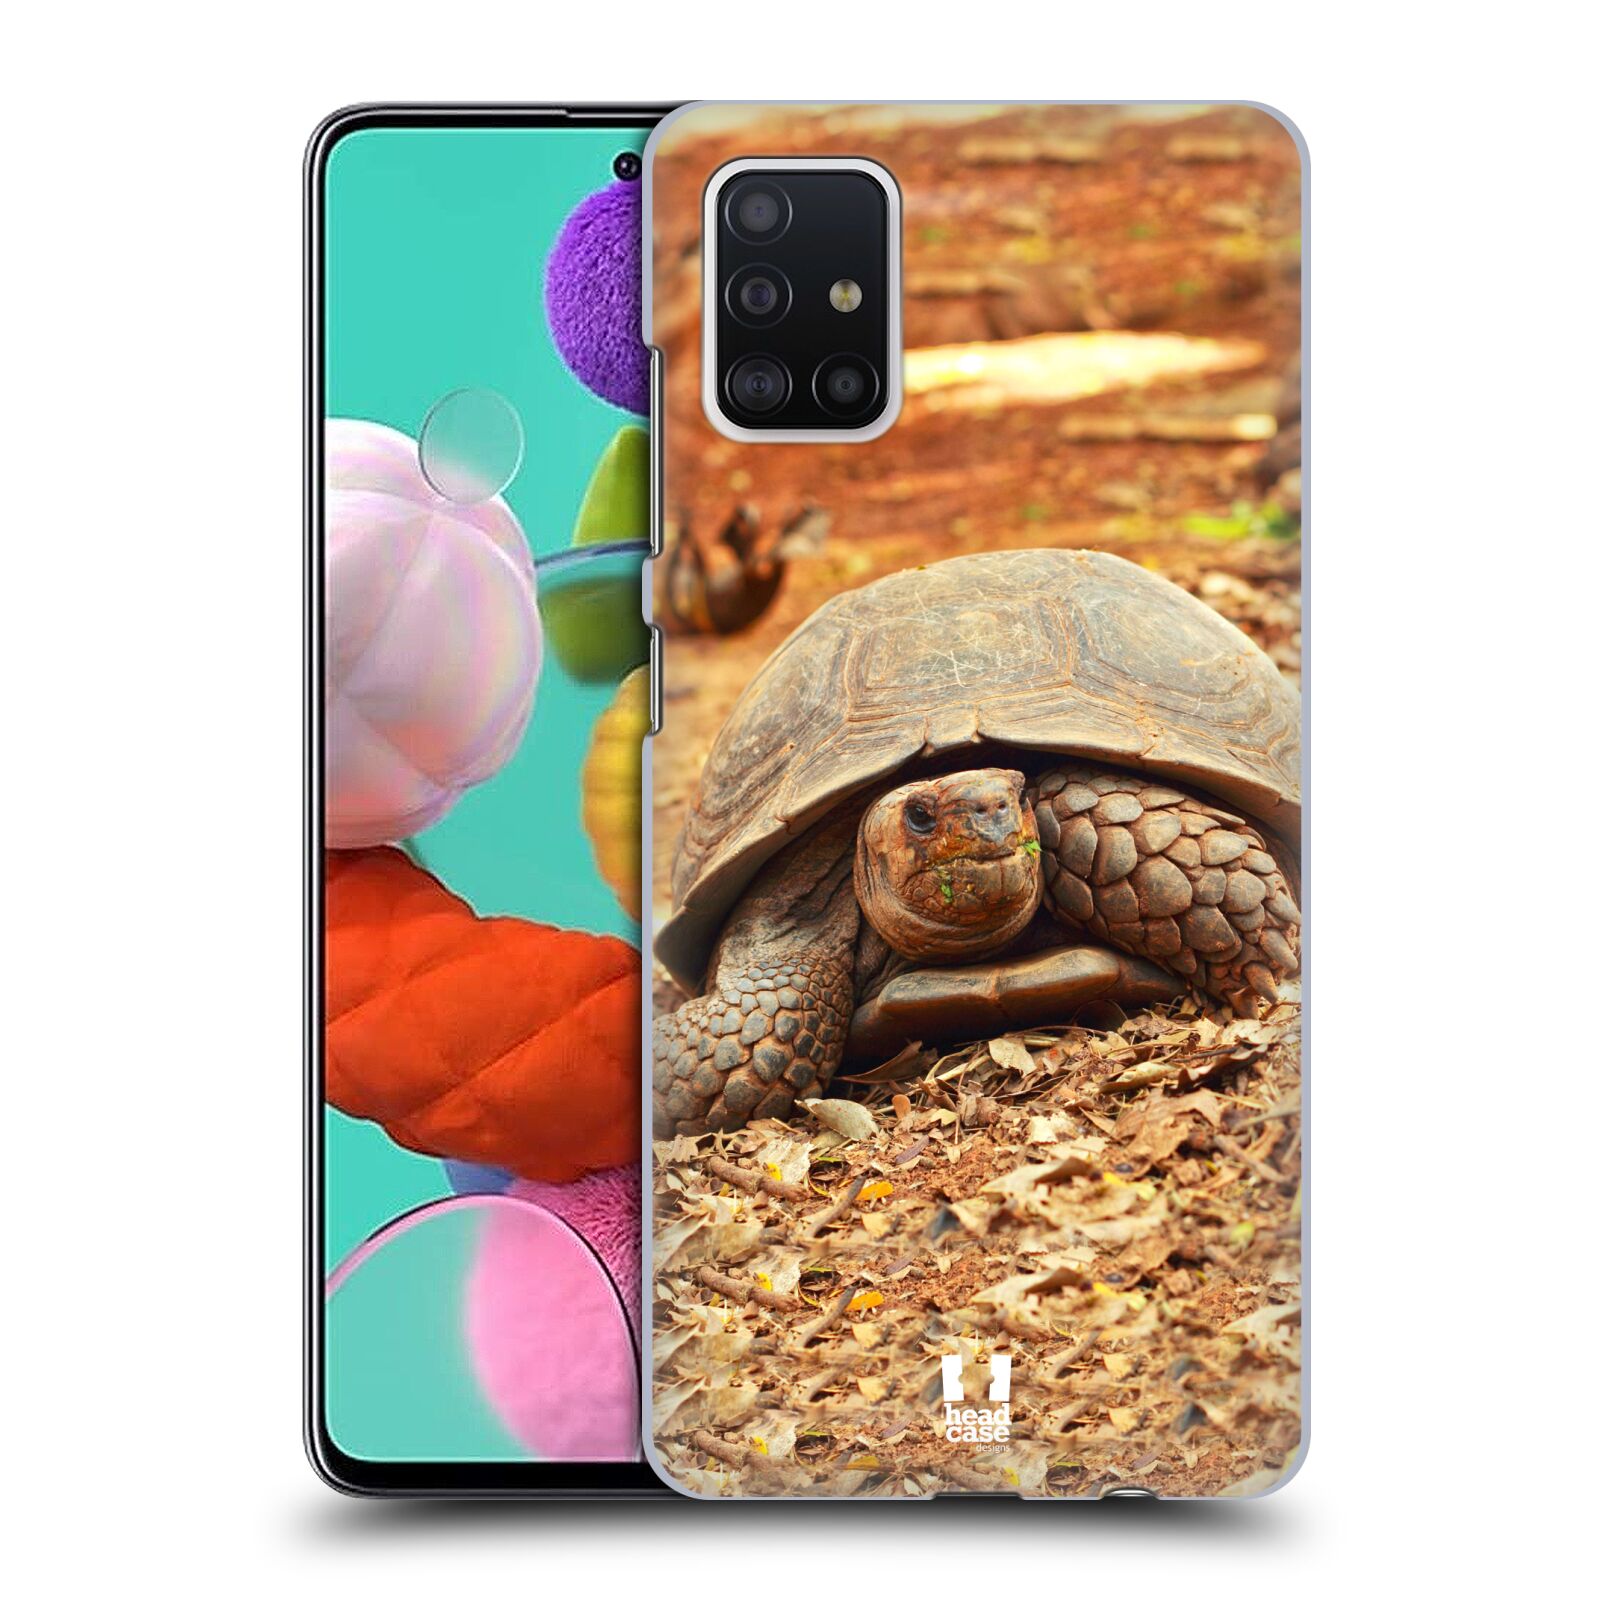 Pouzdro na mobil Samsung Galaxy A51 - HEAD CASE - vzor slavná zvířata foto želva